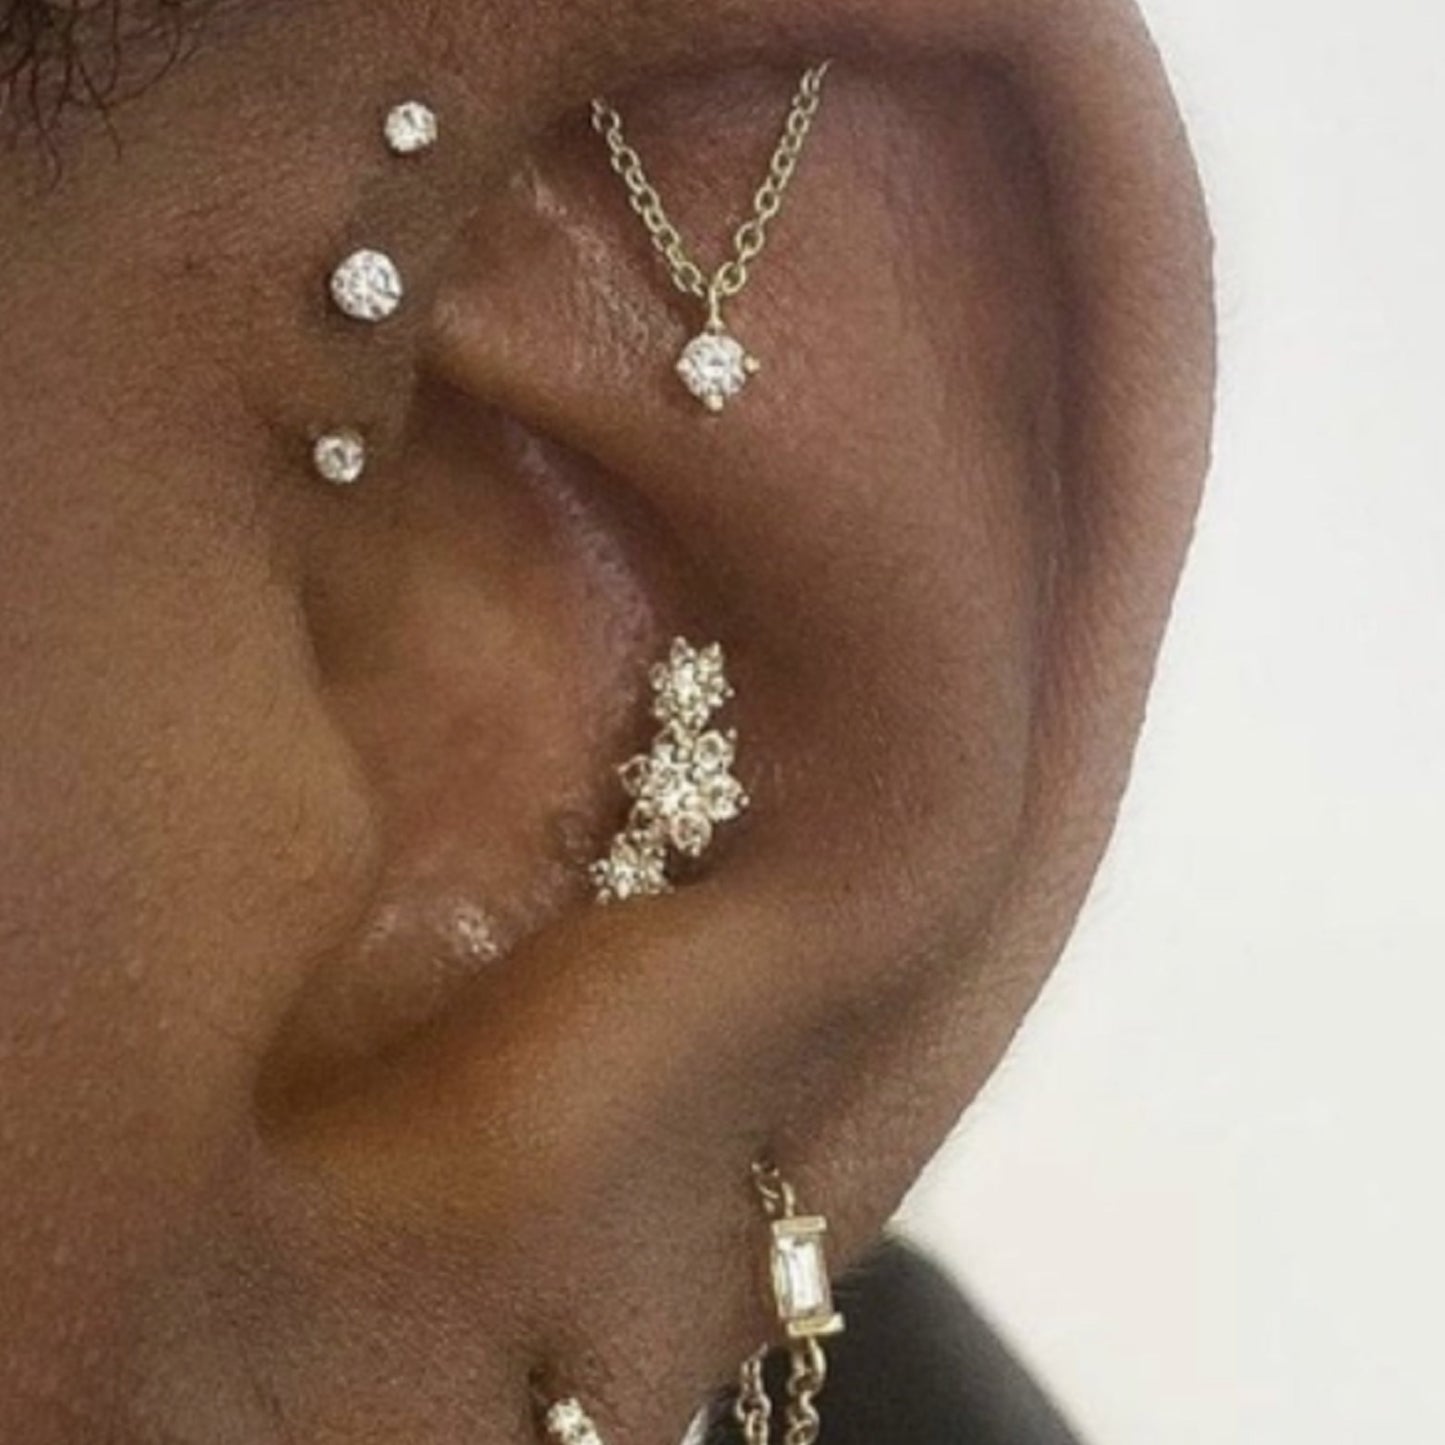 Diamond Chain Earrings, Industrial Piercing Earrings